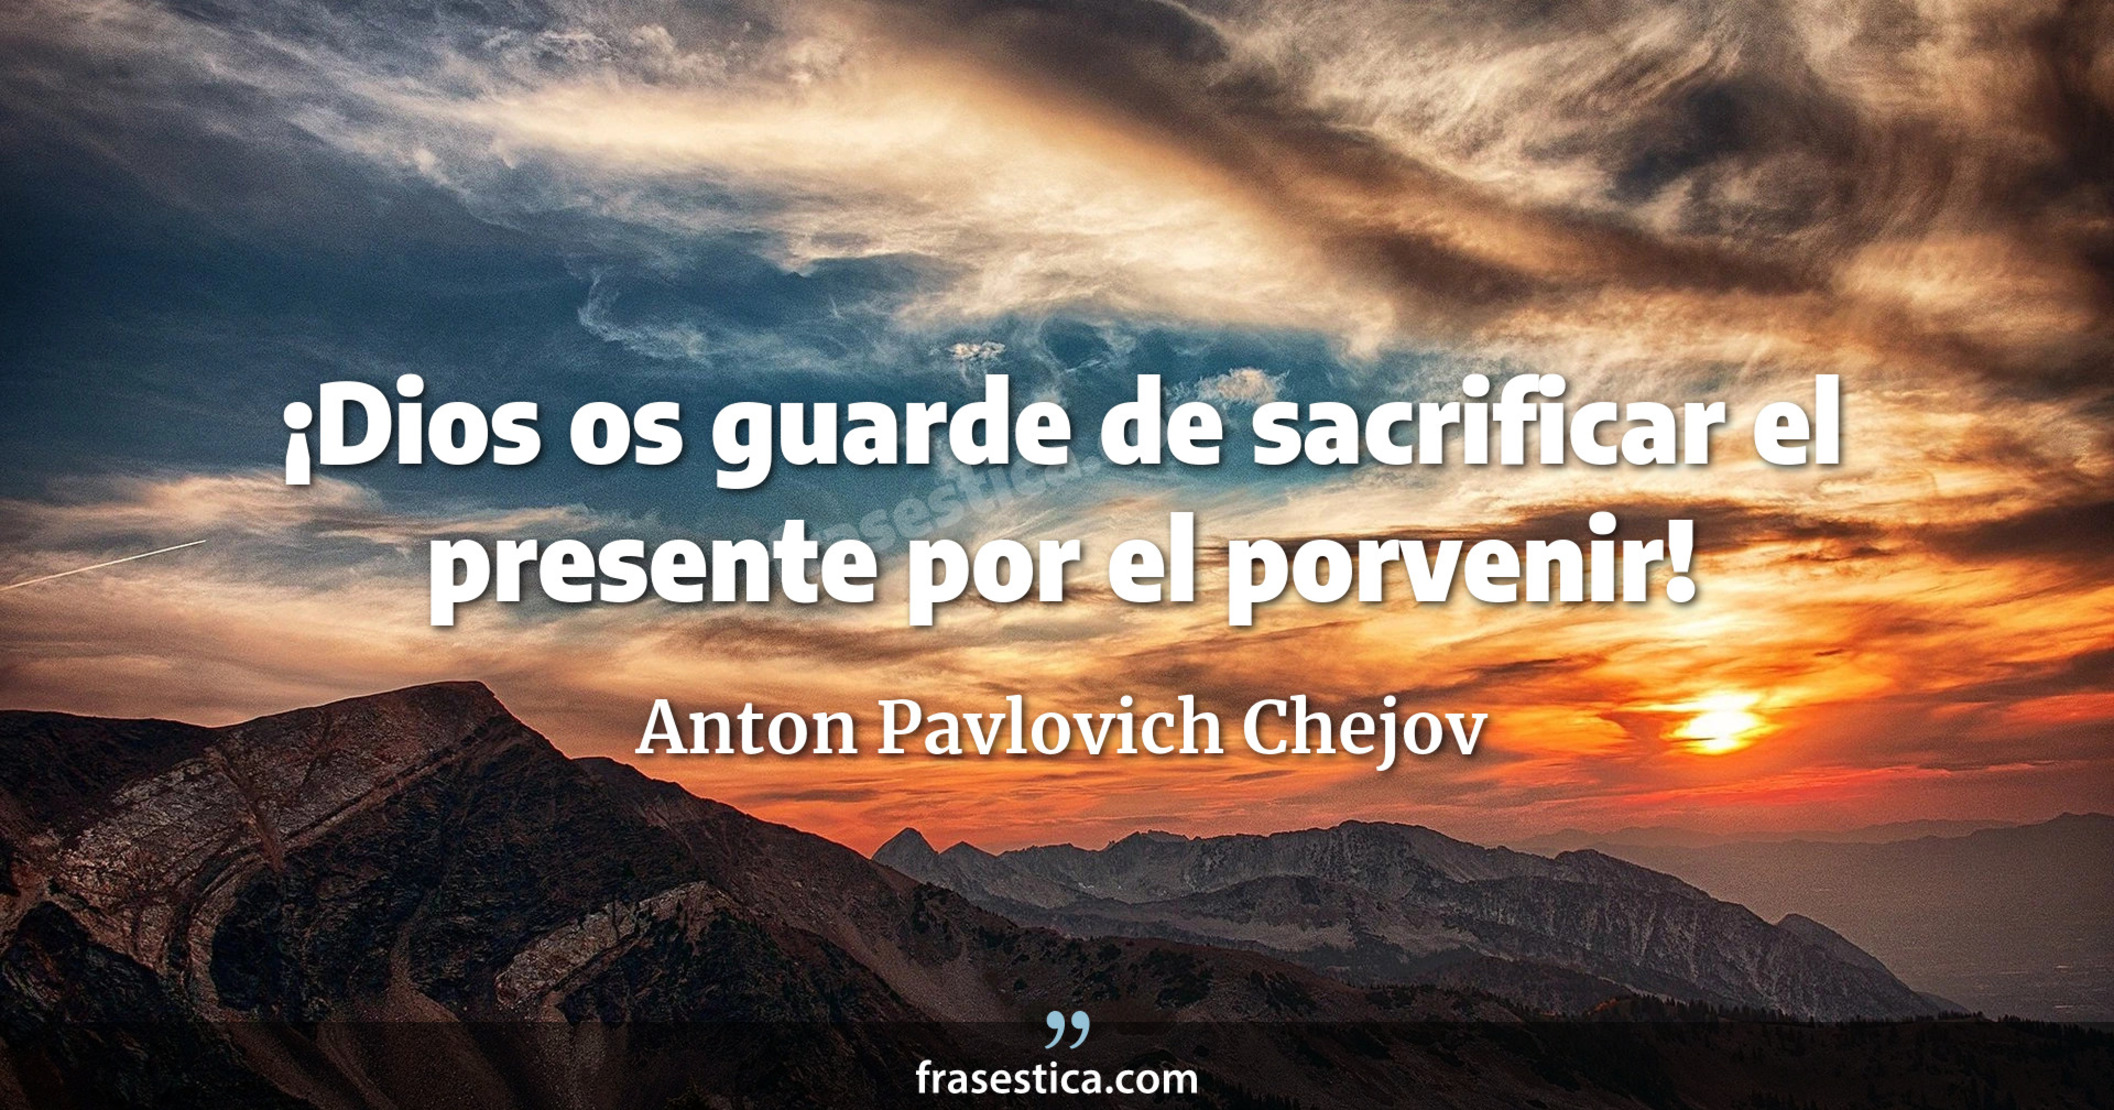 ¡Dios os guarde de sacrificar el presente por el porvenir! - Anton Pavlovich Chejov